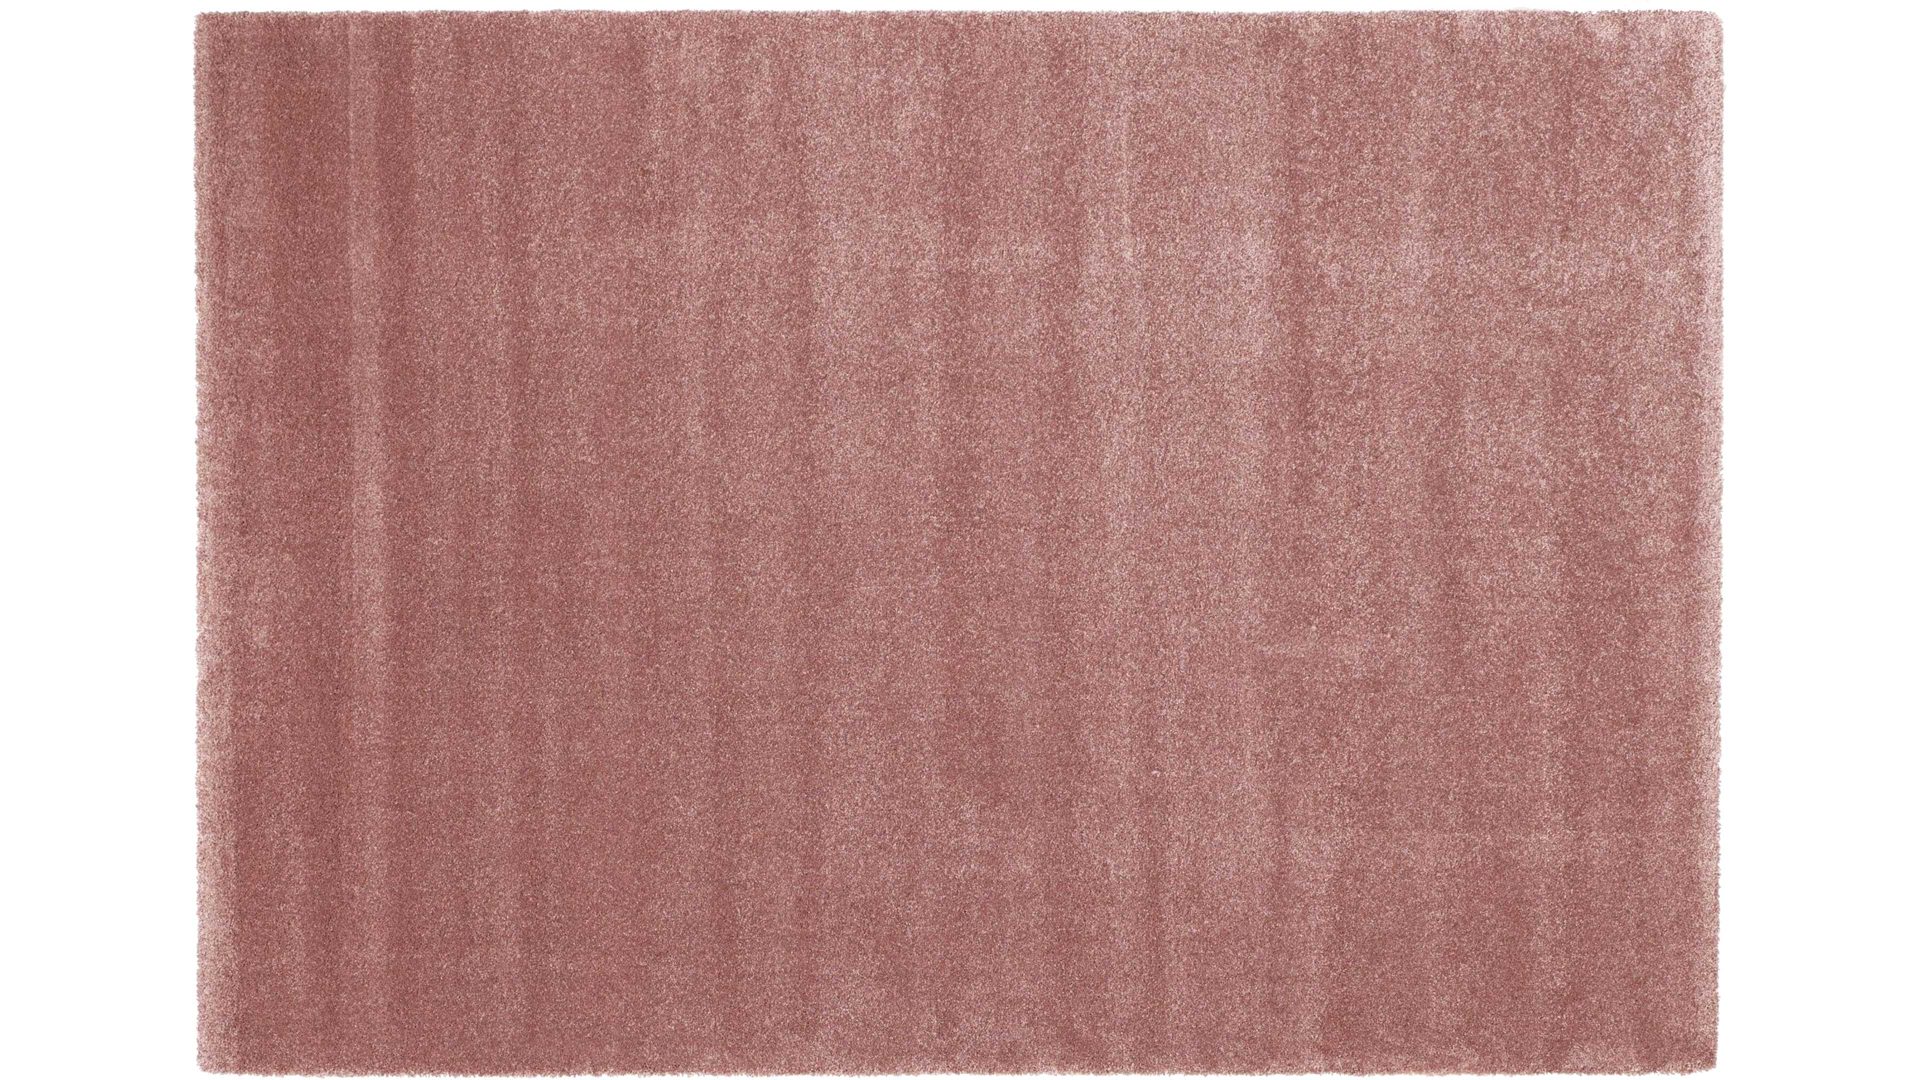 Webteppich Oci aus Kunstfaser in Pastellfarben Webteppich Bellevue rundet Ihre Wohnaccessoires ab rosenholzfarbene Kunstfaser – ca. 160 x 230 cm